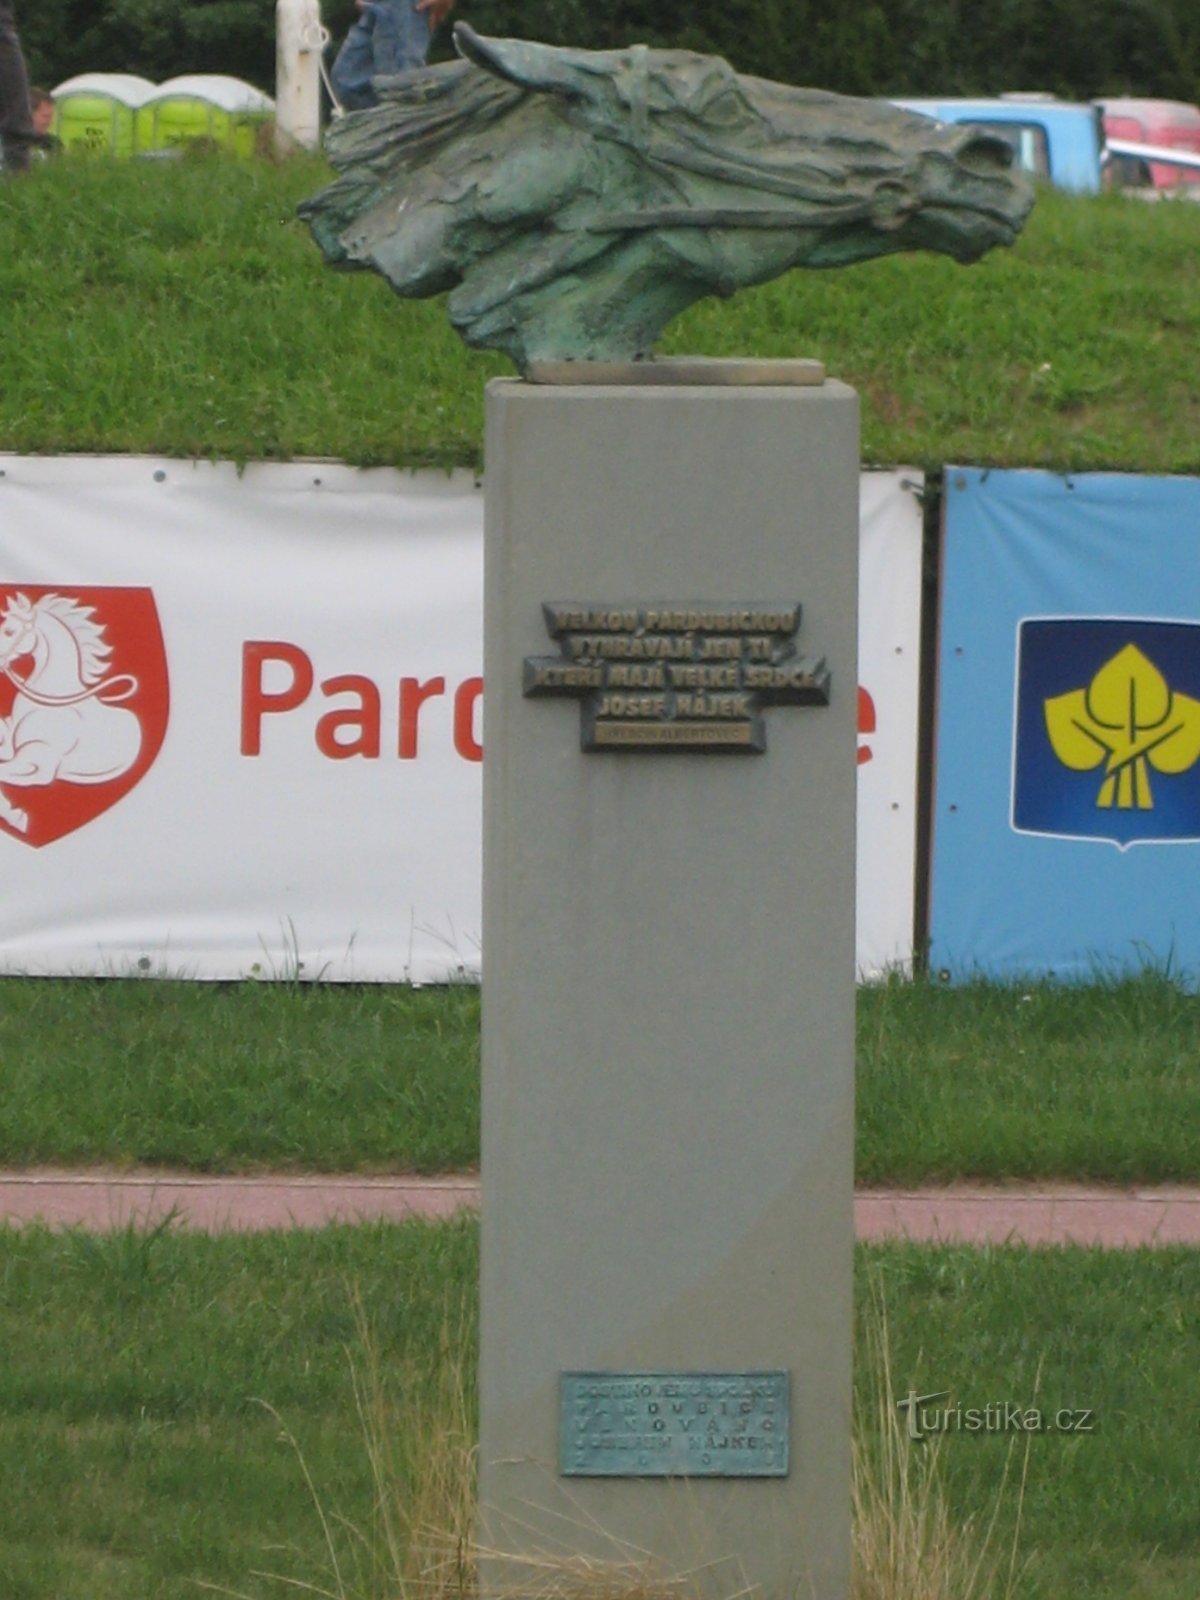 Statuia unui hipodrom - Pardubice